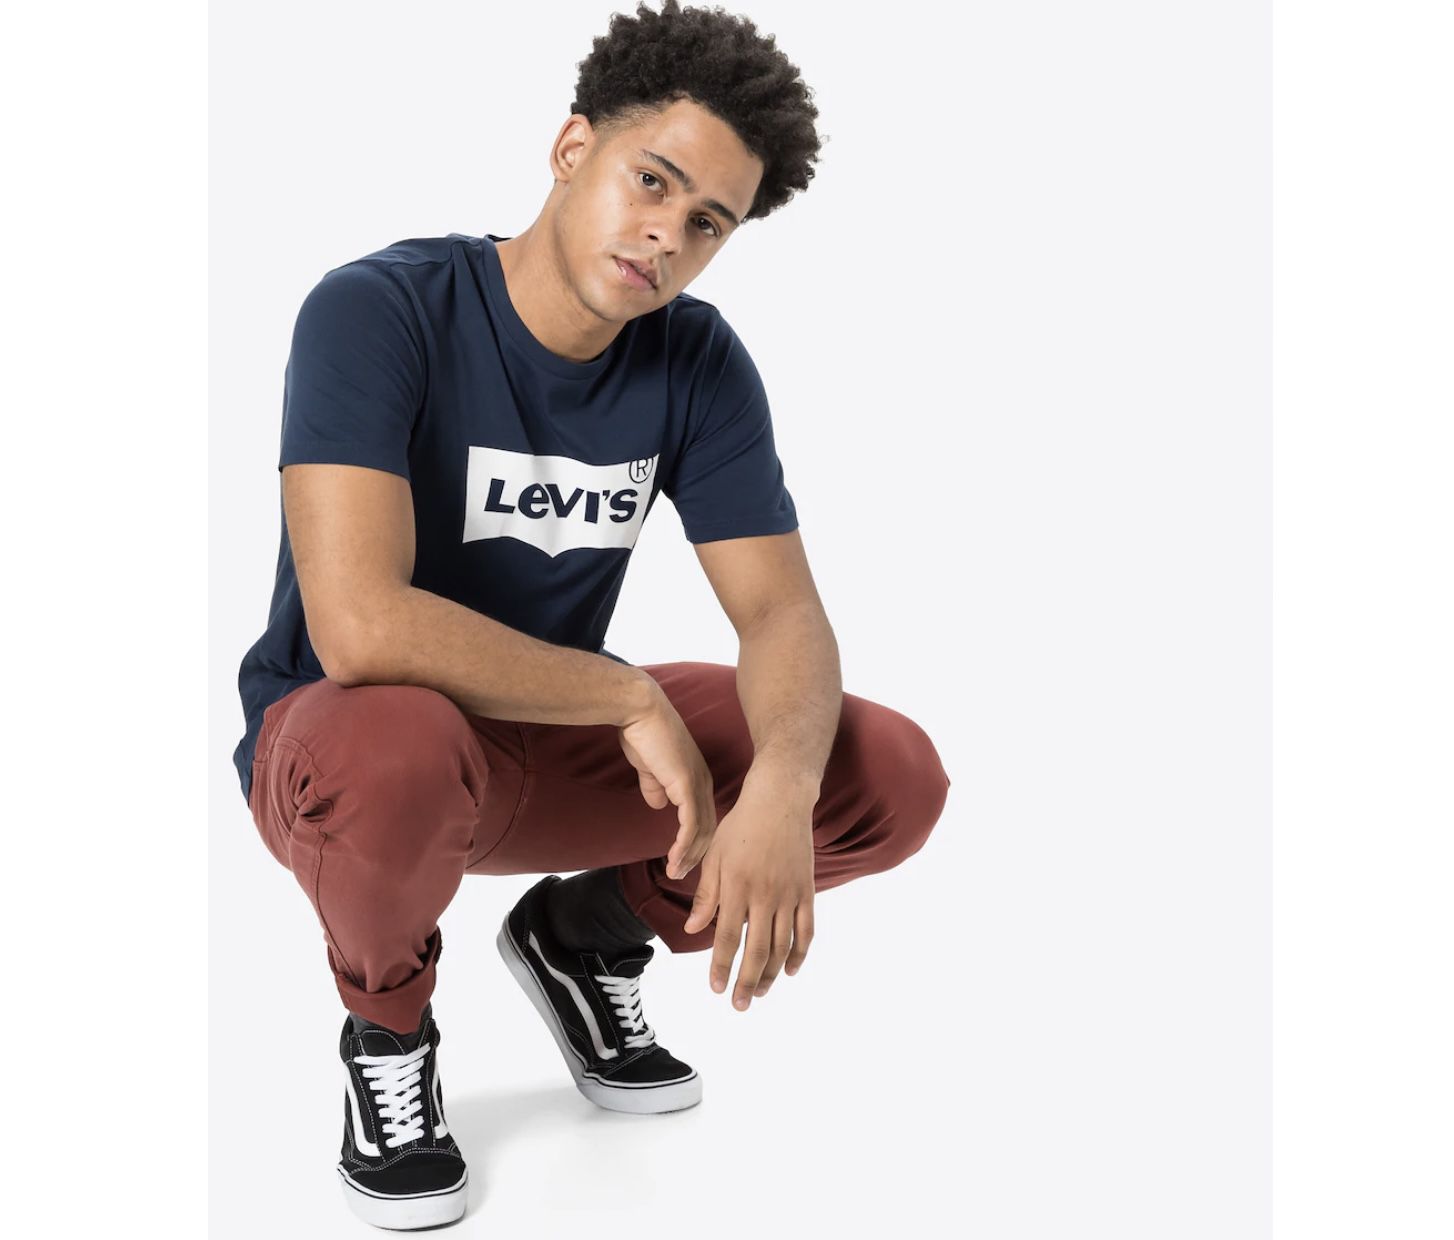 Levis T Shirt Batwing Logo Tee in S, M und L für 14,98€ (statt 24€)   Prime